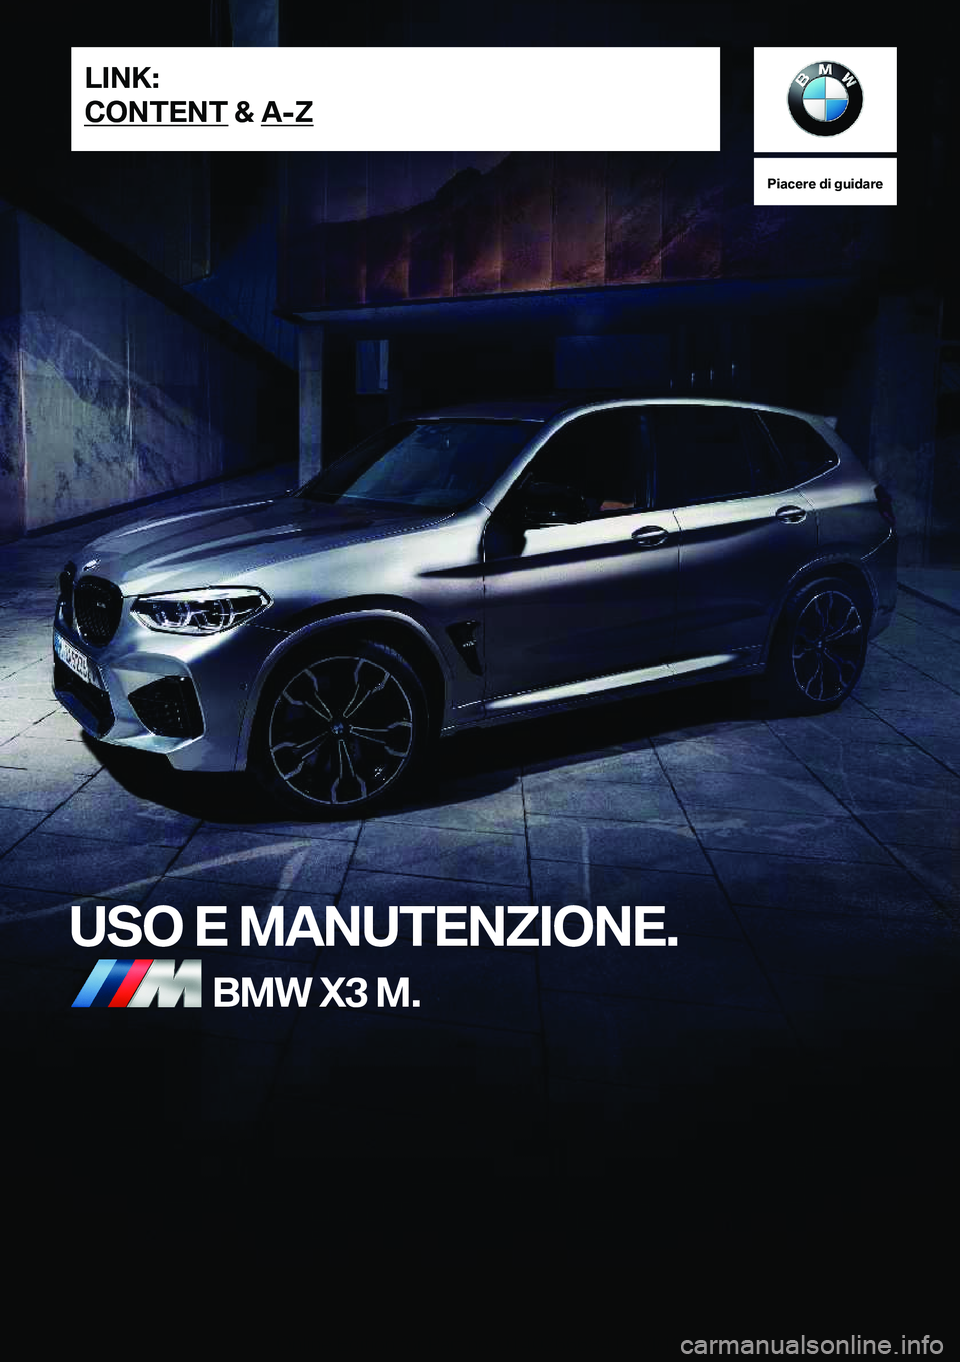 BMW X3 M 2020  Libretti Di Uso E manutenzione (in Italian) �P�i�a�c�e�r�e��d�i��g�u�i�d�a�r�e
�U�S�O��E��M�A�N�U�T�E�N�Z�I�O�N�E�.�B�M�W��X�3��M�.�L�I�N�K�:
�C�O�N�T�E�N�T��&��A�-�Z�O�n�l�i�n�e��E�d�i�t�i�o�n��f�o�r��P�a�r�t��n�o�.��0�1�4�0�2�6�6